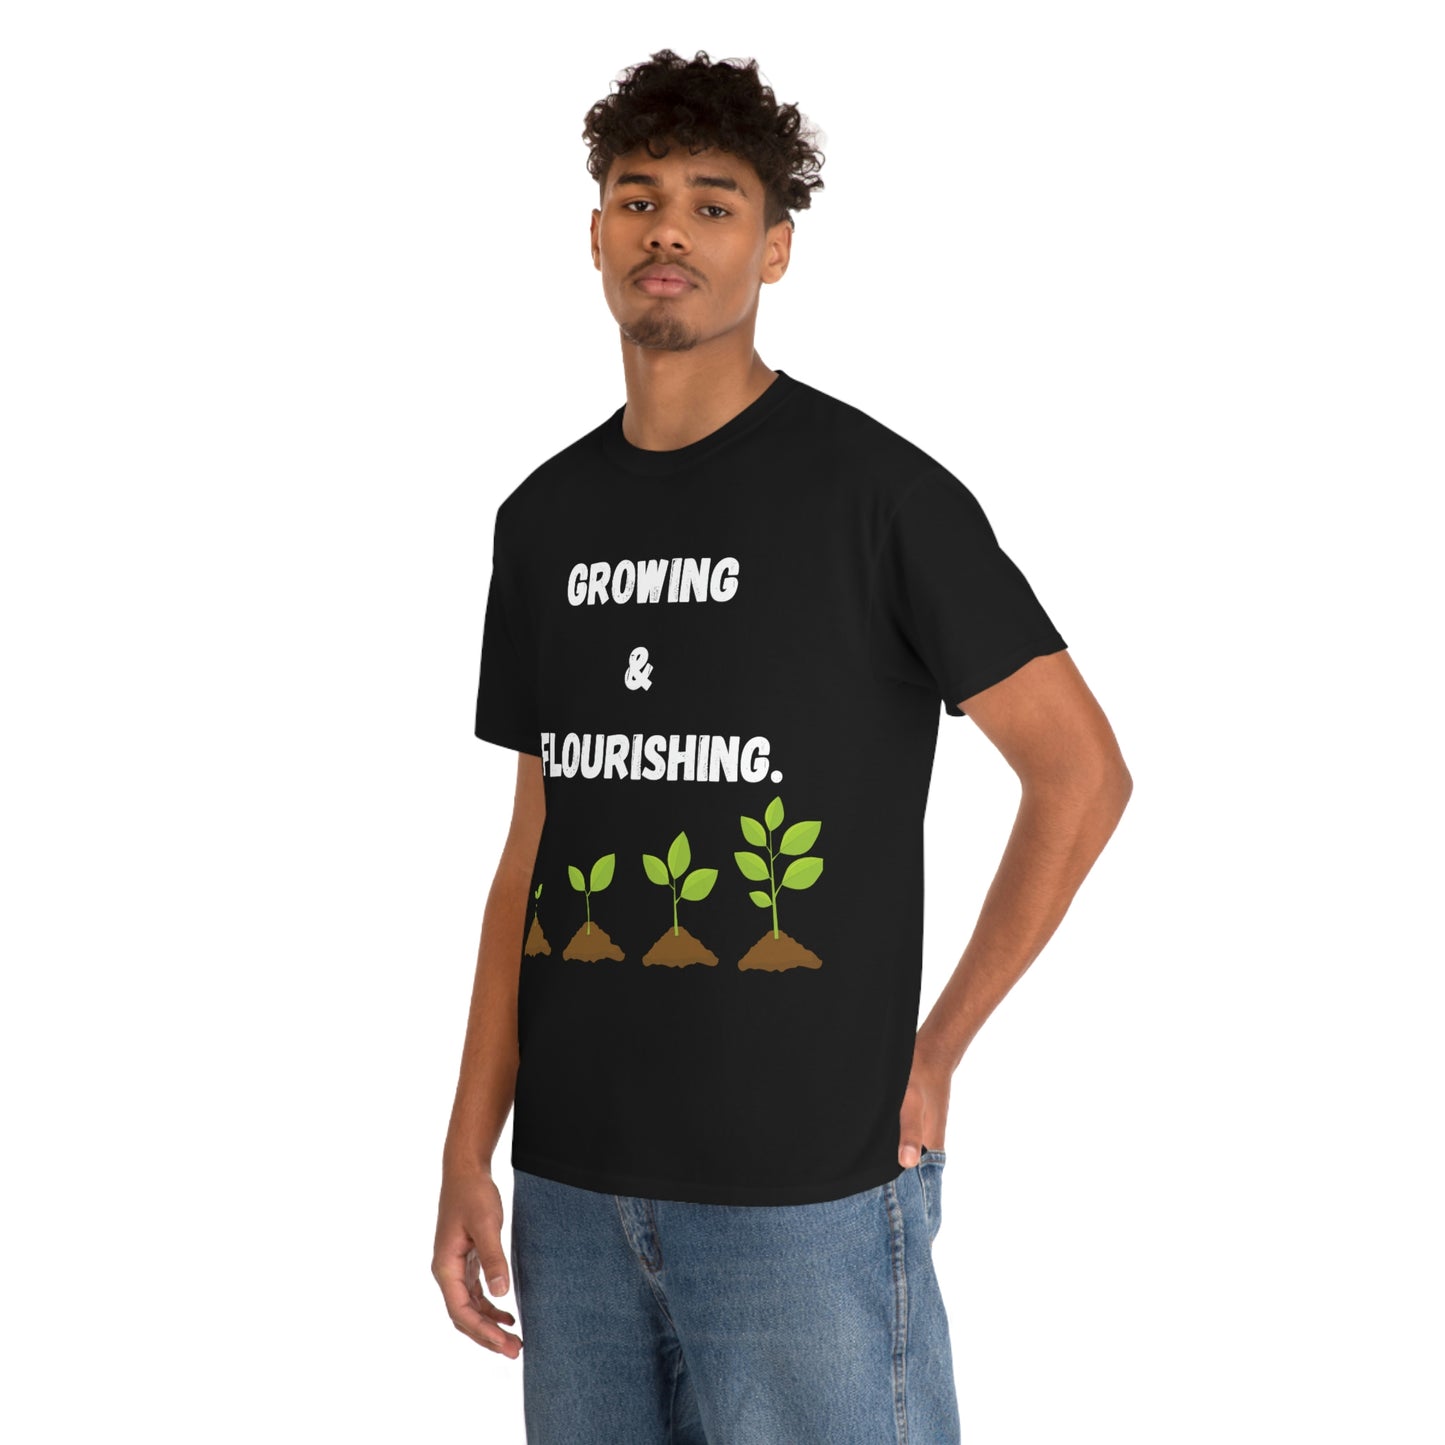 Growing & Flourishing T-Shirt